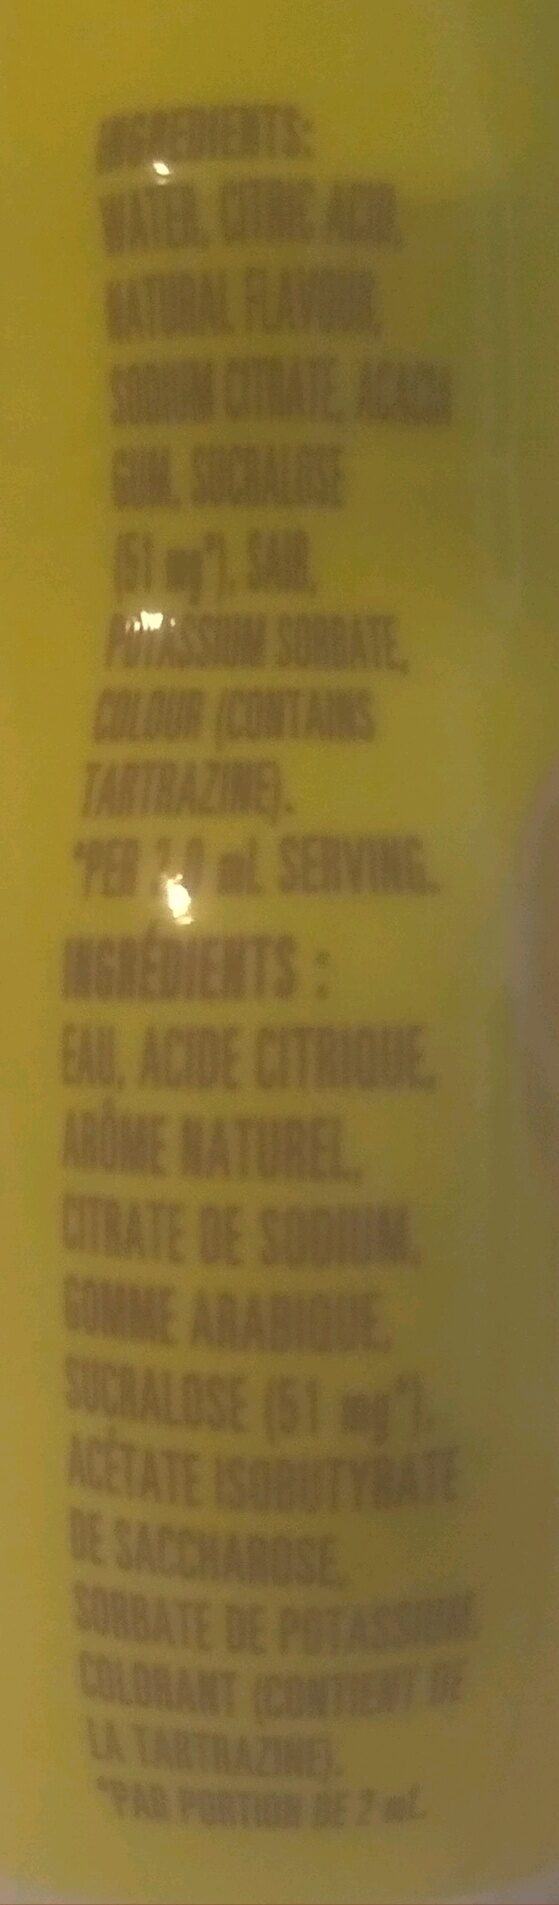 Lemonade Liquid Drink Mix - Ingredients